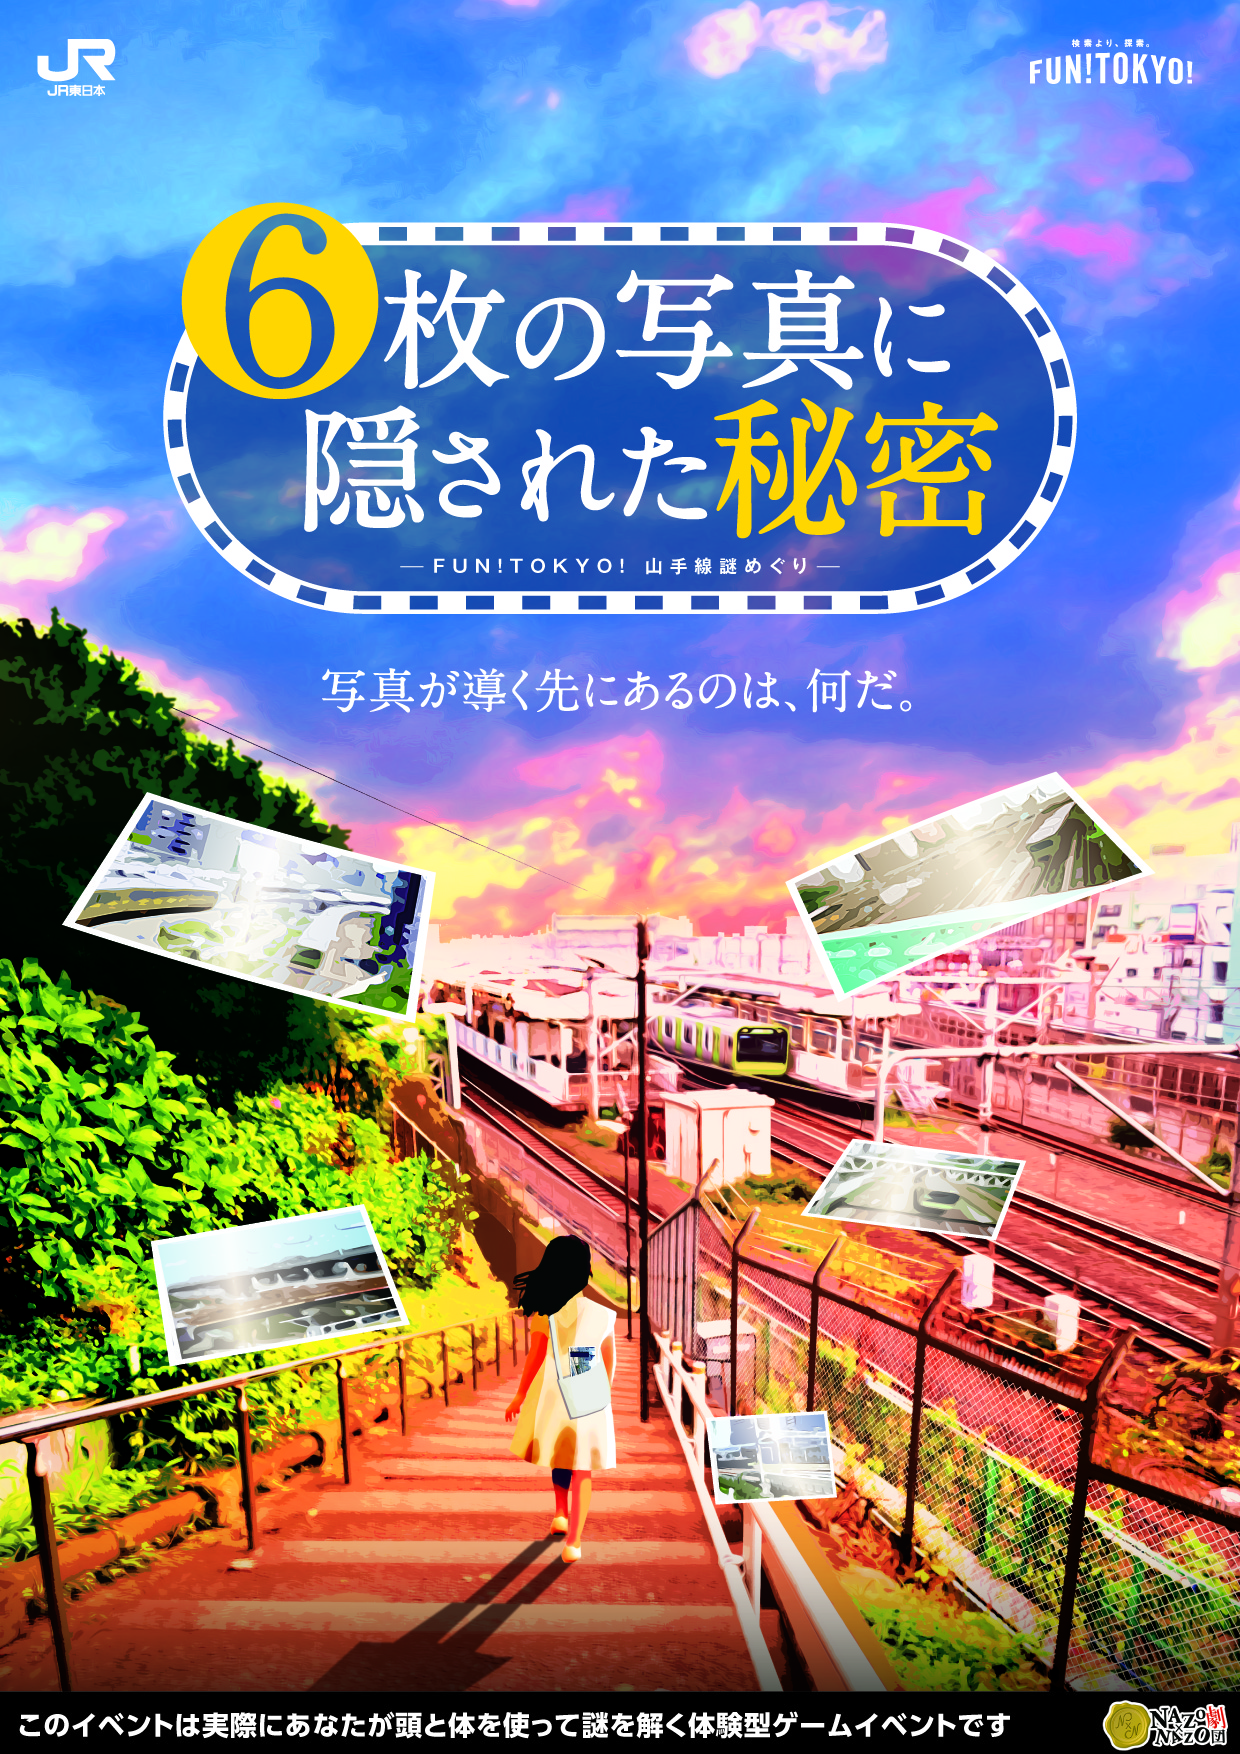 山手線に乗って 東京の街 を探索 ｊｒ東日本が Fun Tokyo のプレイイベント Fun Tokyo 山手線謎めぐり 6枚の写真に隠された秘密 を 10 28 水 から開催 Newscast